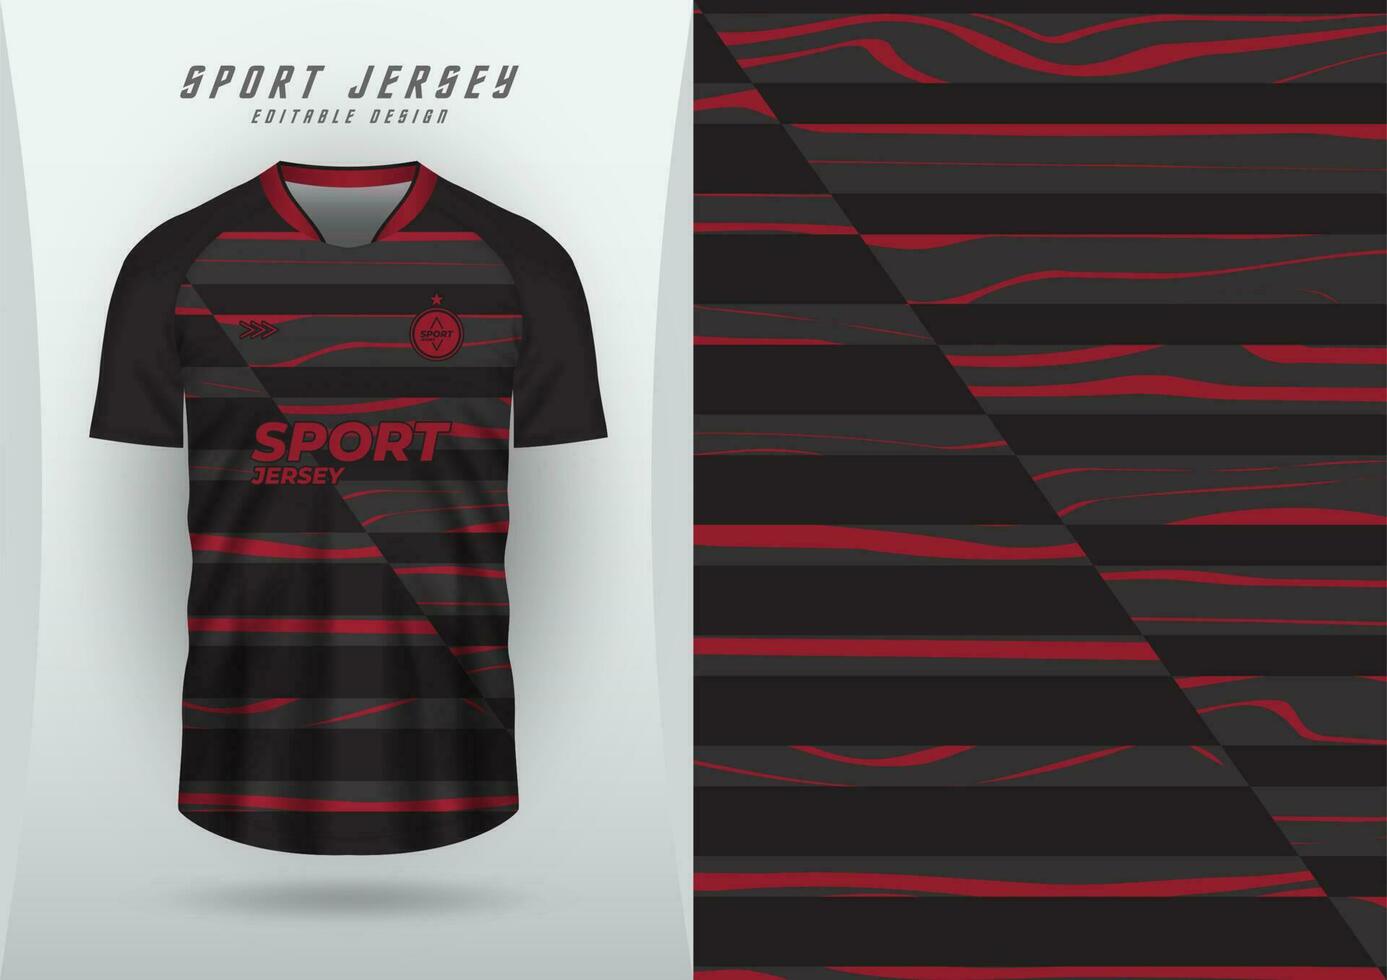 achtergrond voor sport- Jersey, voetbal Jersey, rennen Jersey, racing Jersey, zwart rood streep patroon. vector